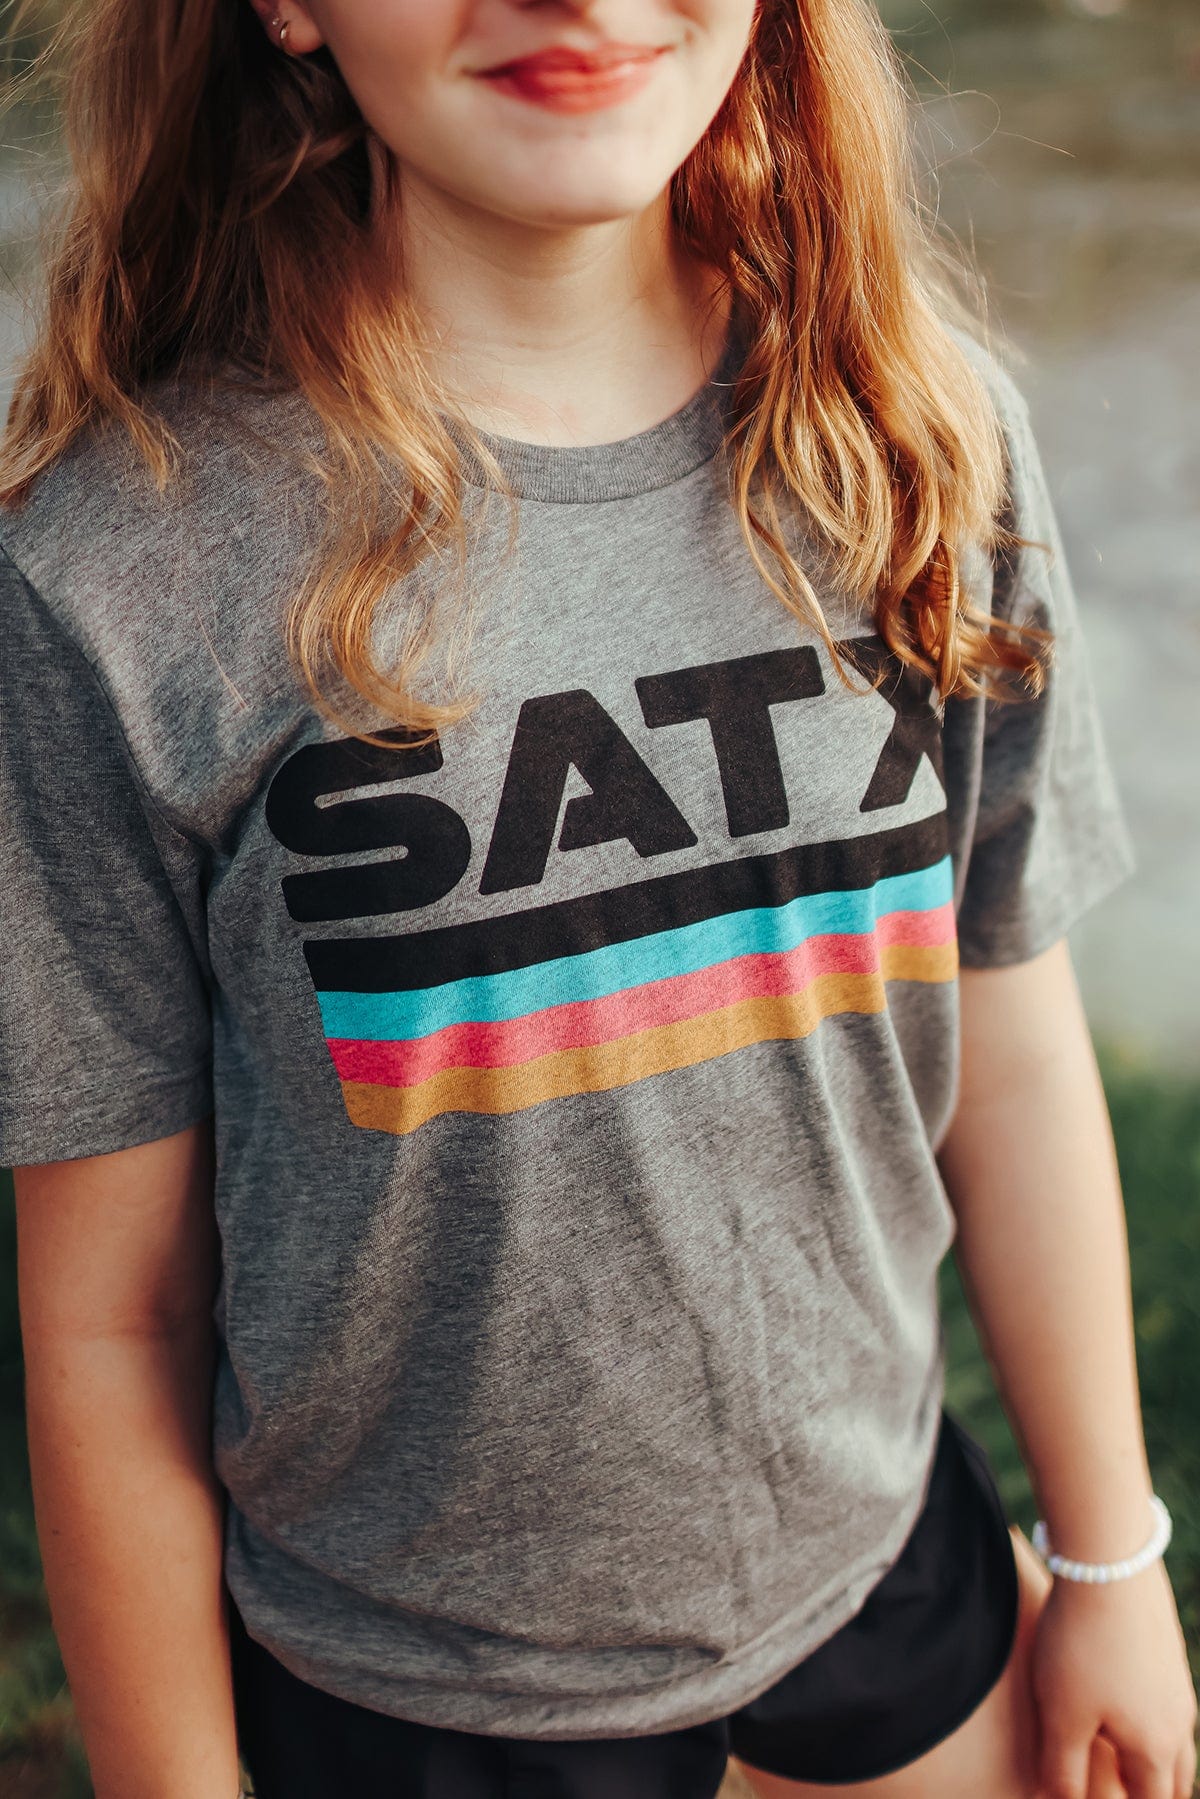 RIVER ROAD CLOTHING Shirts San Antonio Texas | SATX